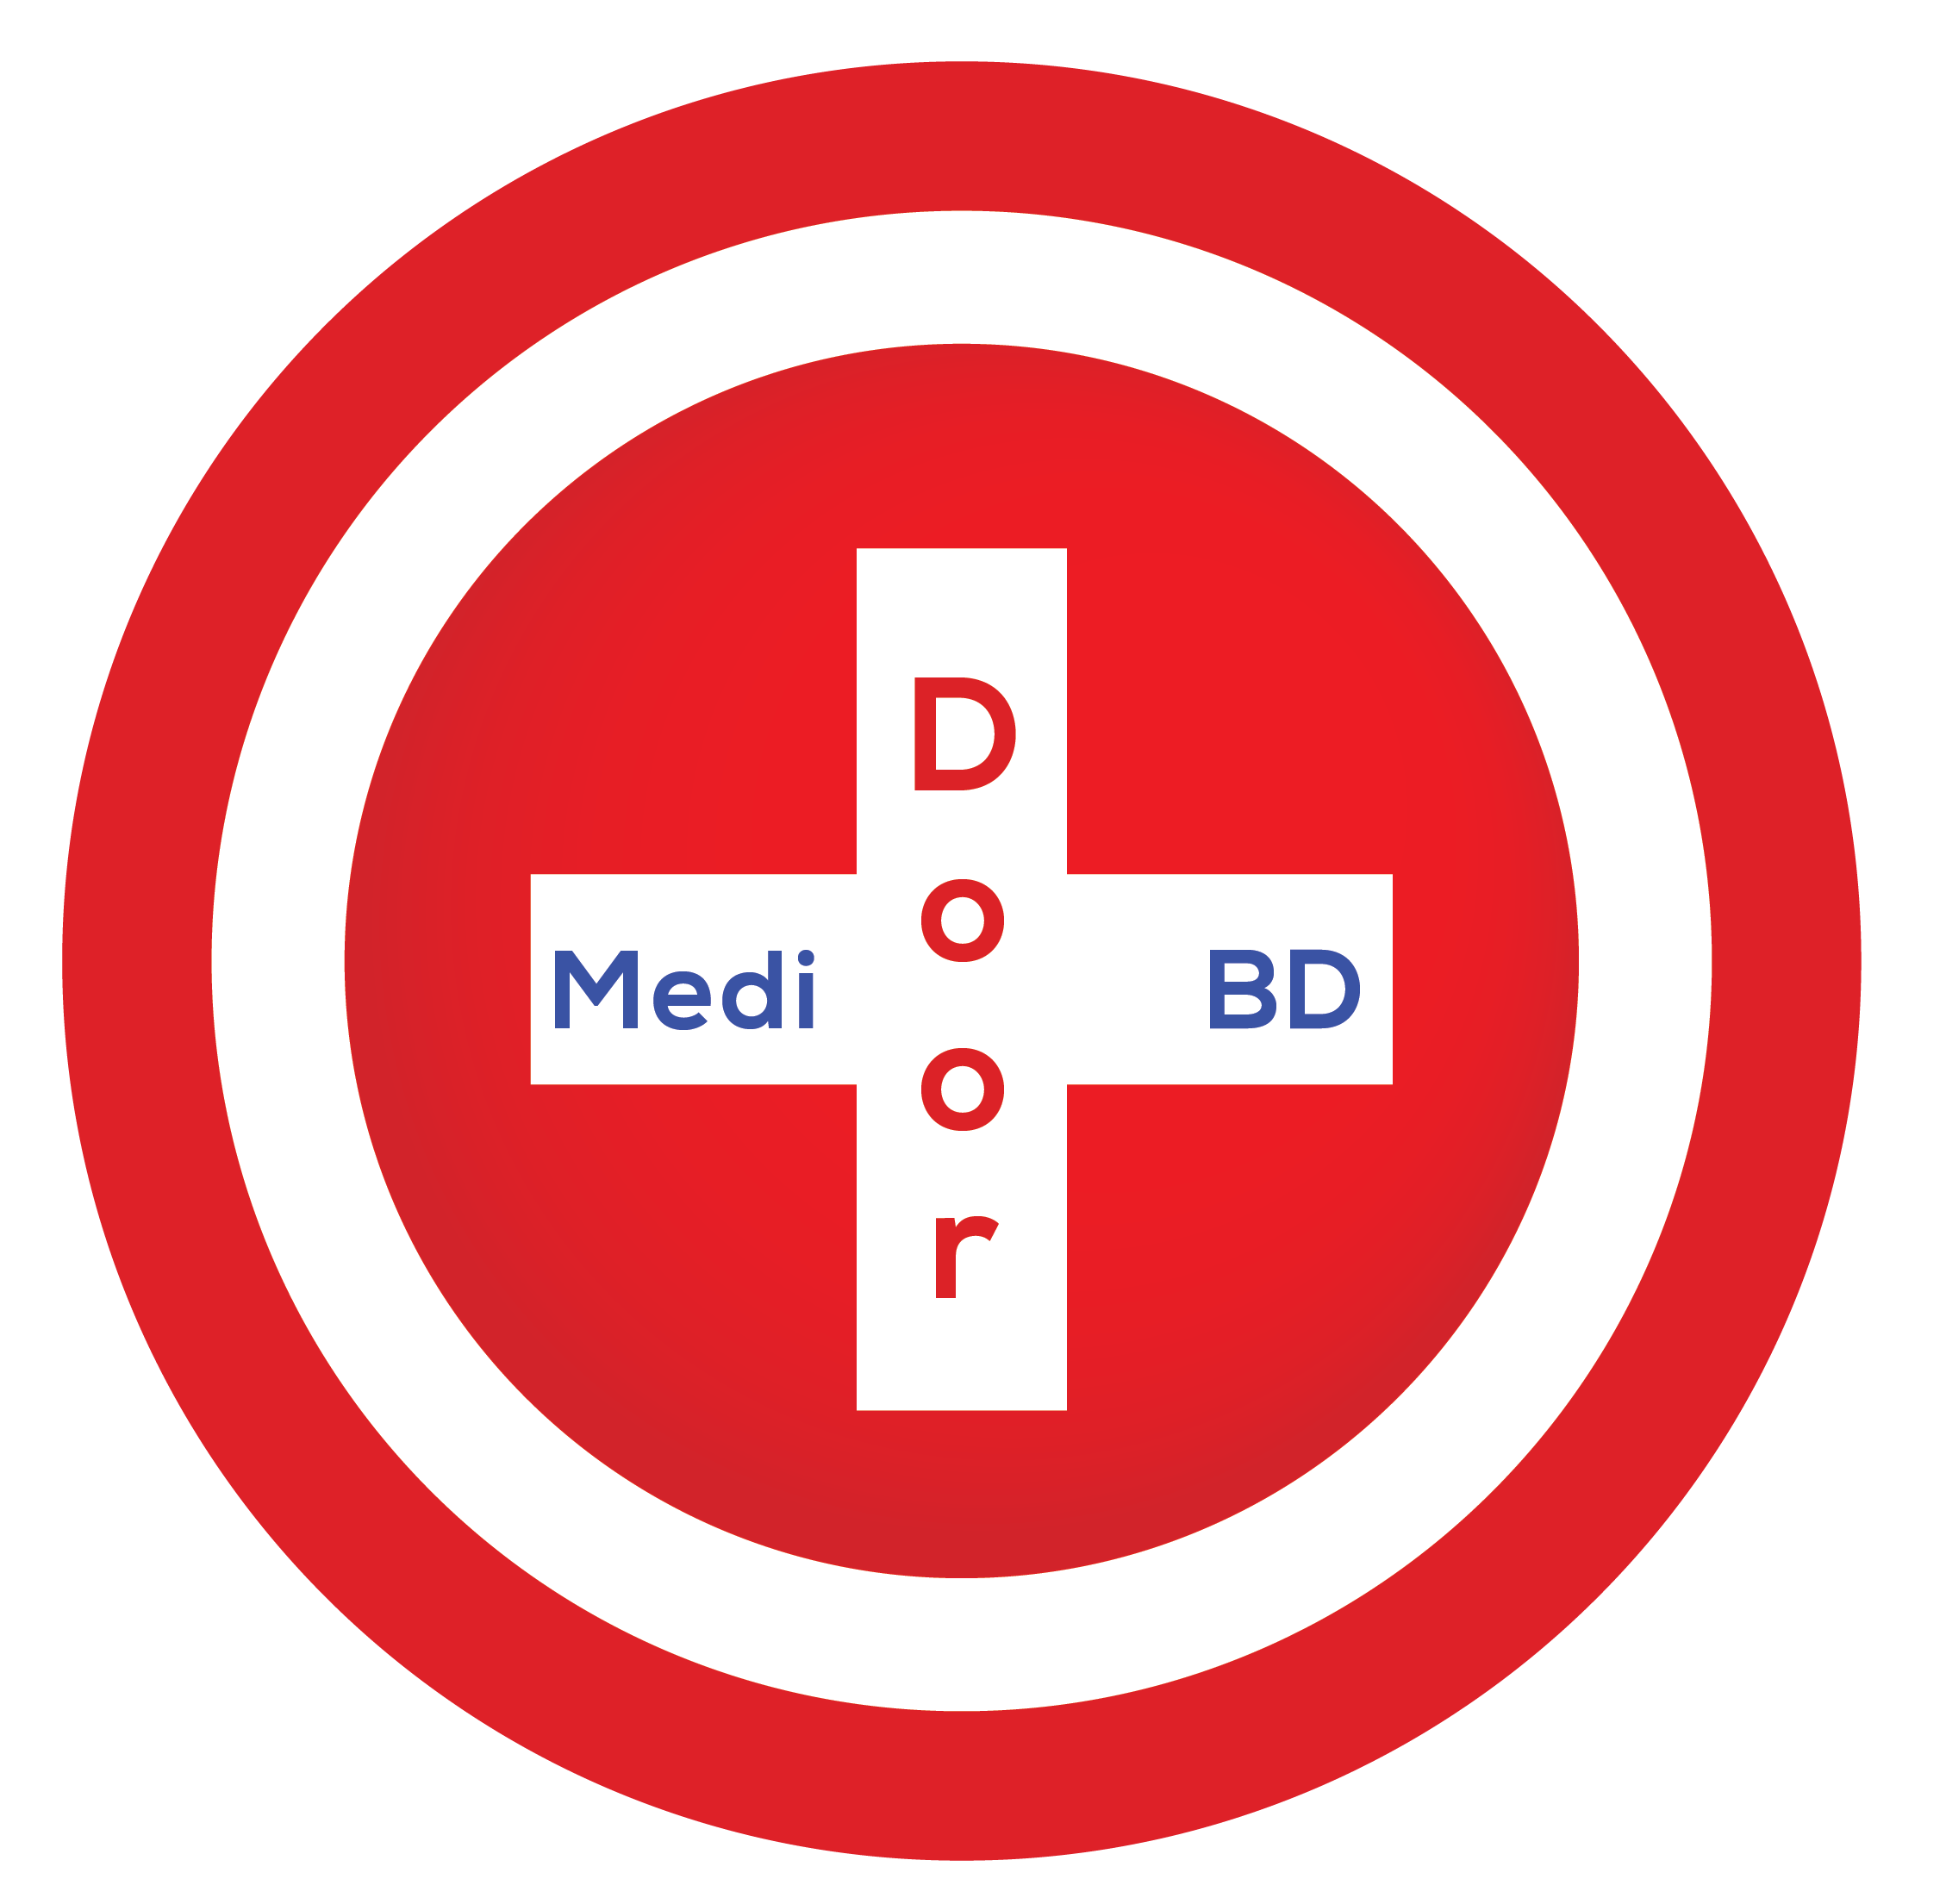 MediDoor BD